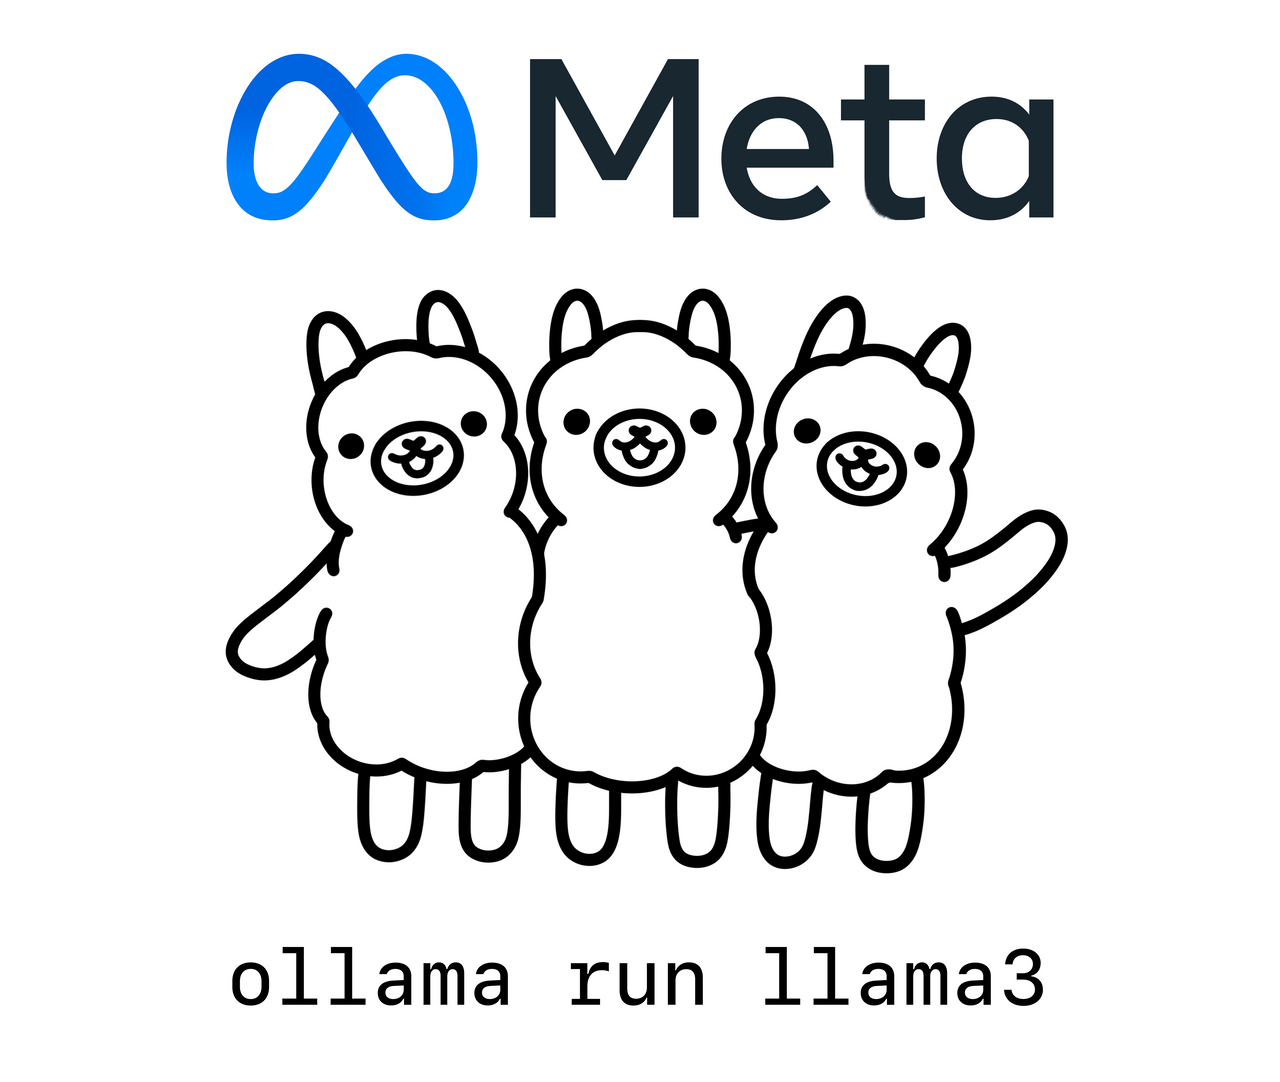 meta-ollama-llama3